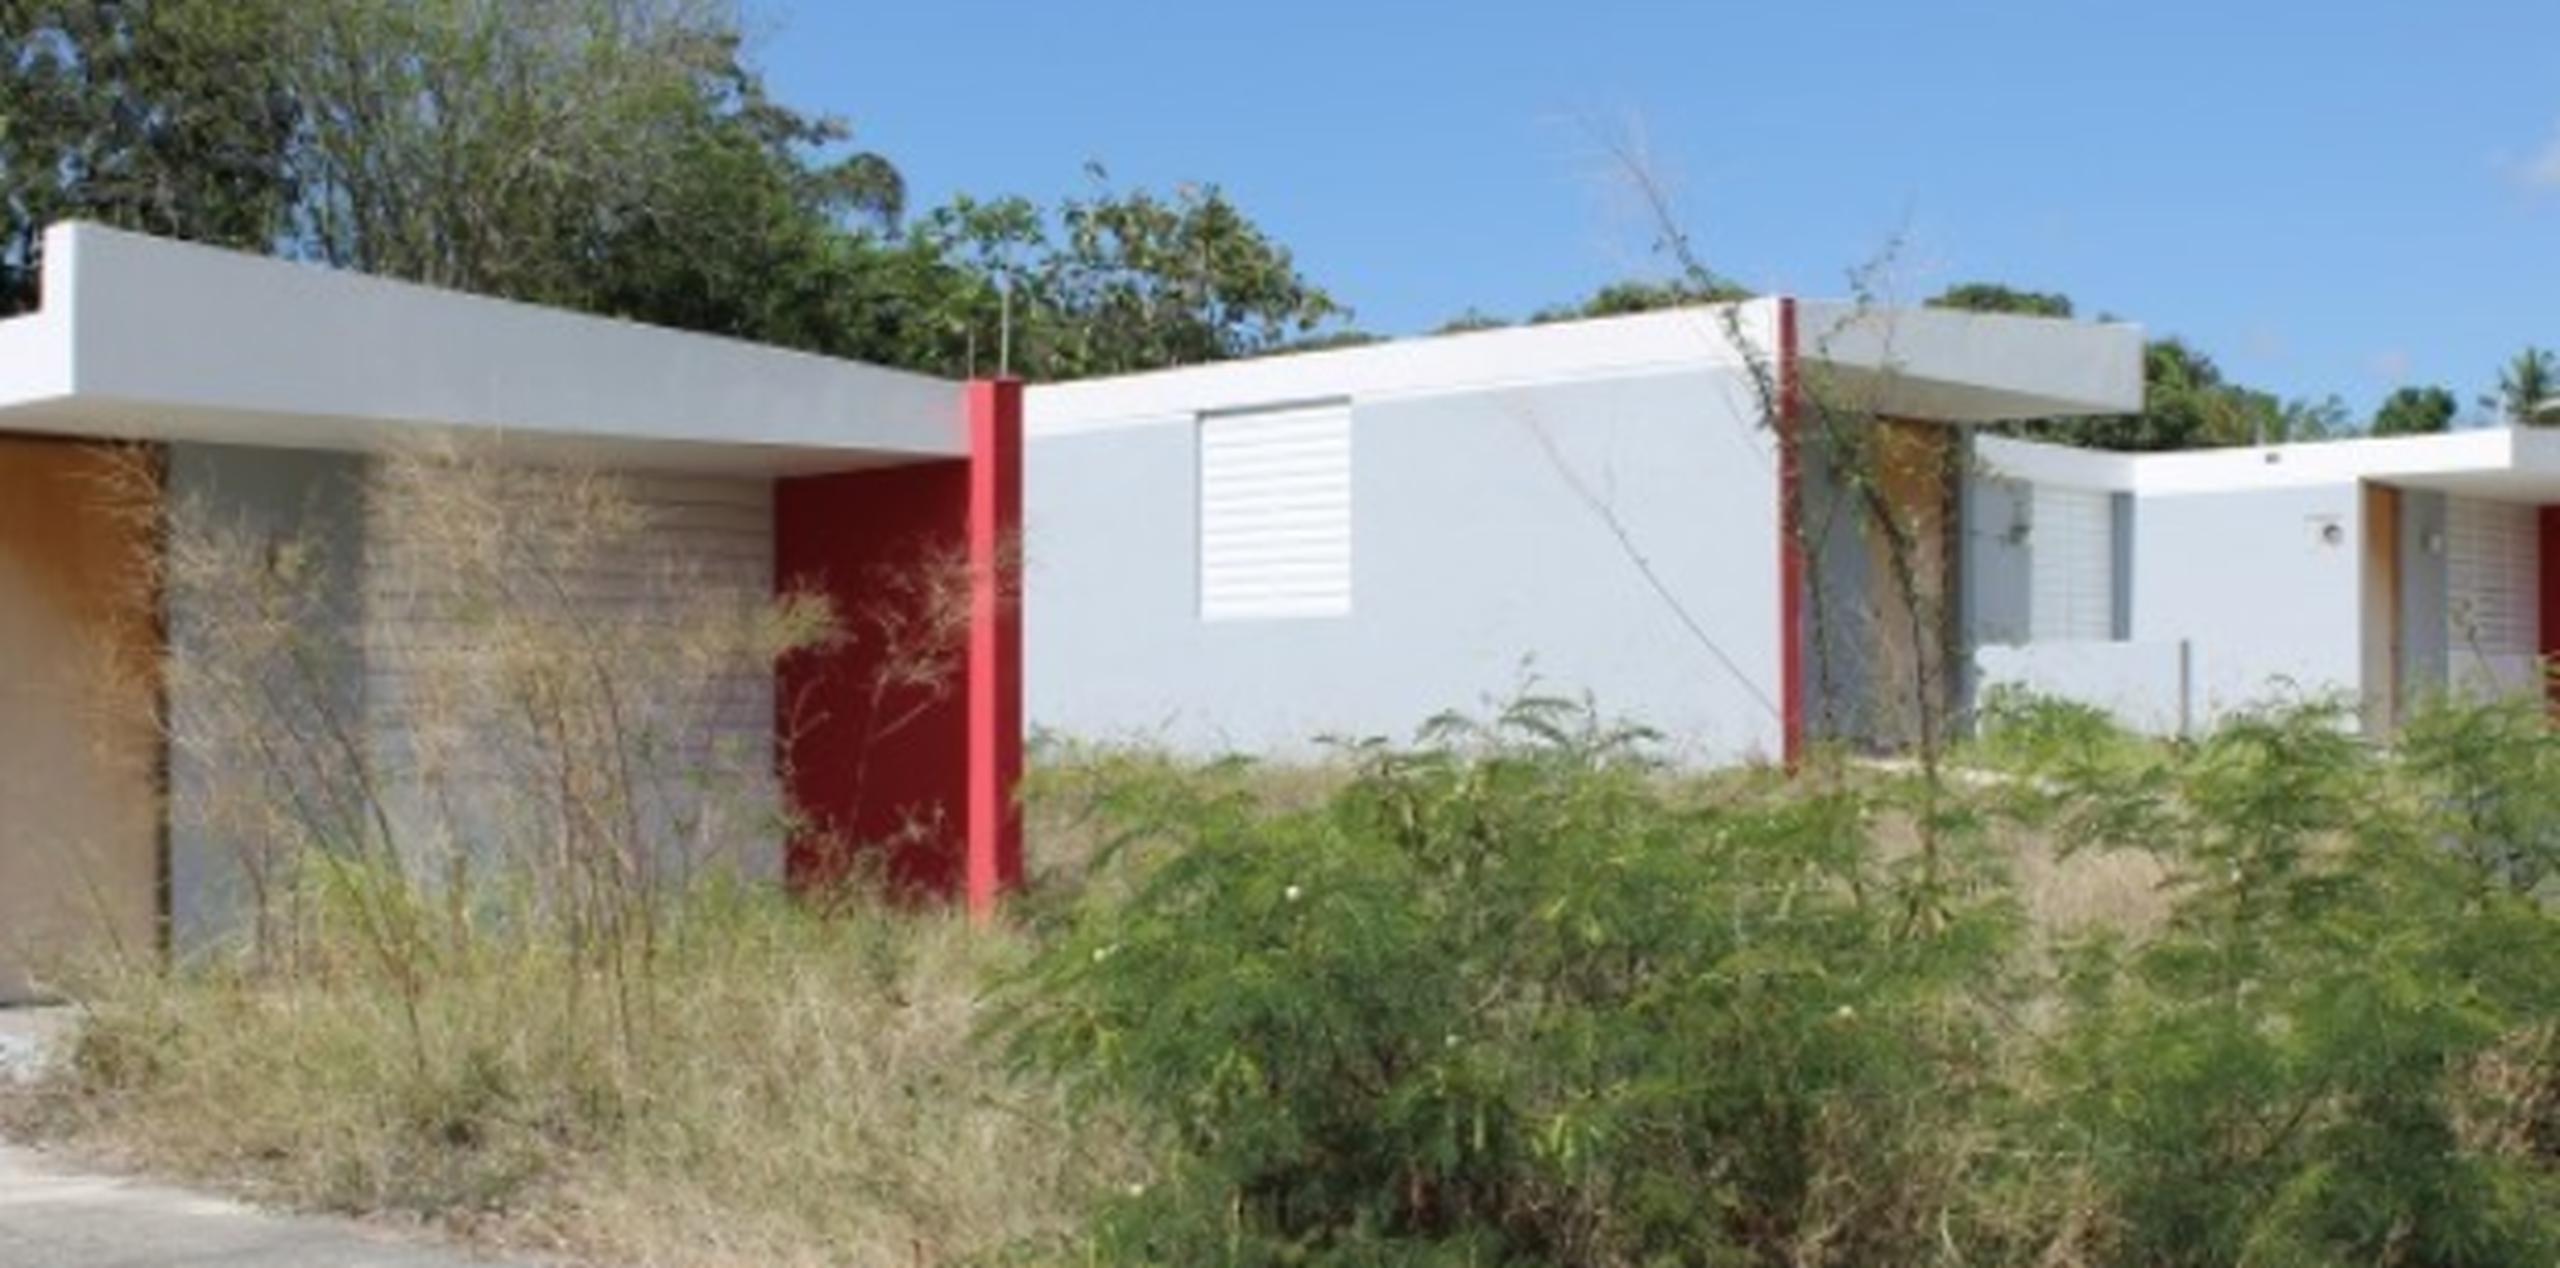 Alrededor de 29 residencias quedaron abandonadas en el sector Manzanilla sin recibir mantenimiento ni ser entregadas a los vecinos. (Suministrada)